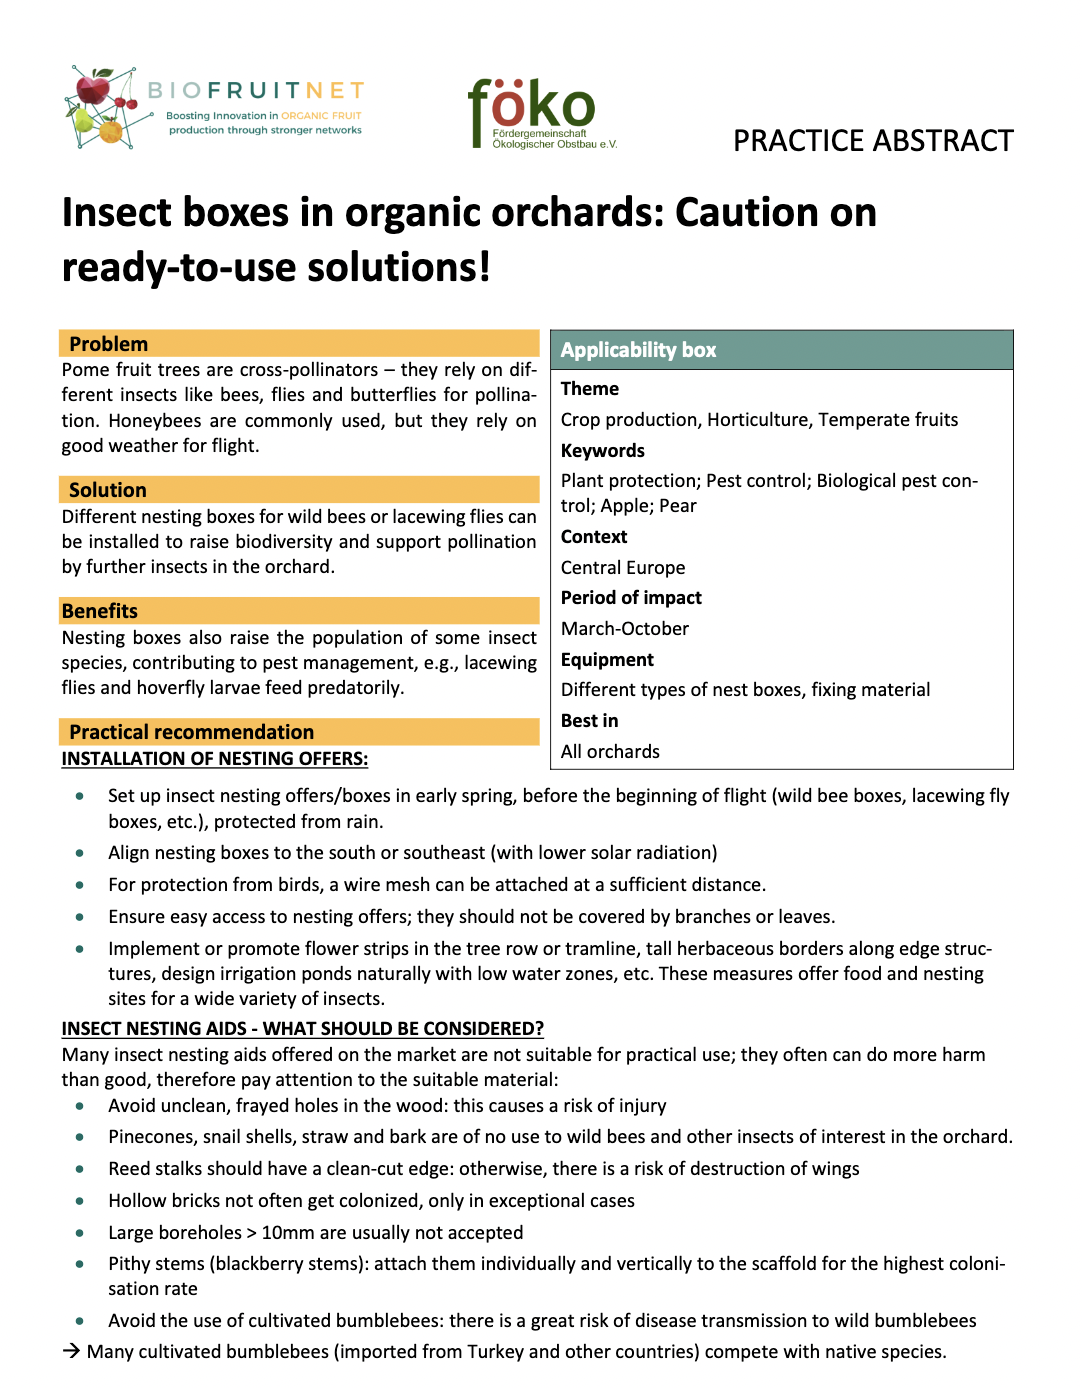 Кутии за насекоми в органични овощни градини: Внимание при готови за употреба разтвори! (Резюме на практиката на BIOFRUITNET)